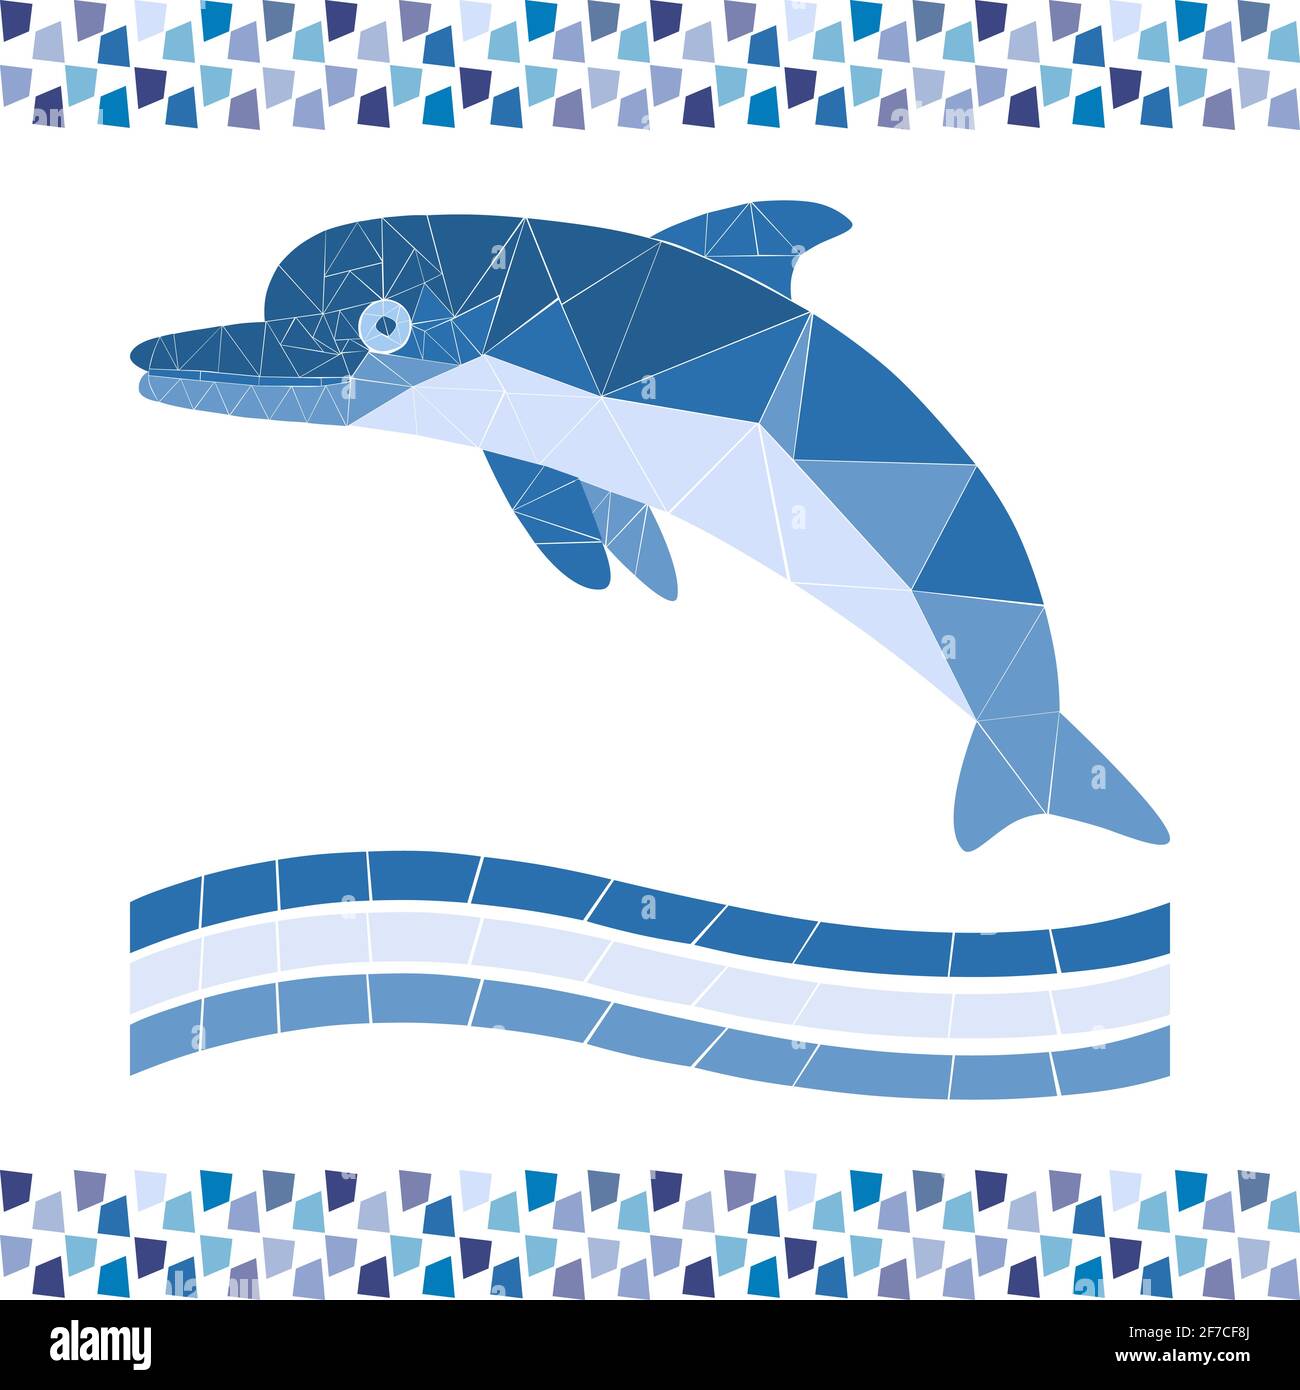 Mosaikblauer Delphin. Monochrome Illustration für Pool- oder Badgestaltung. Bild für Emblem. Isolierter Vektorrahmen Stock Vektor